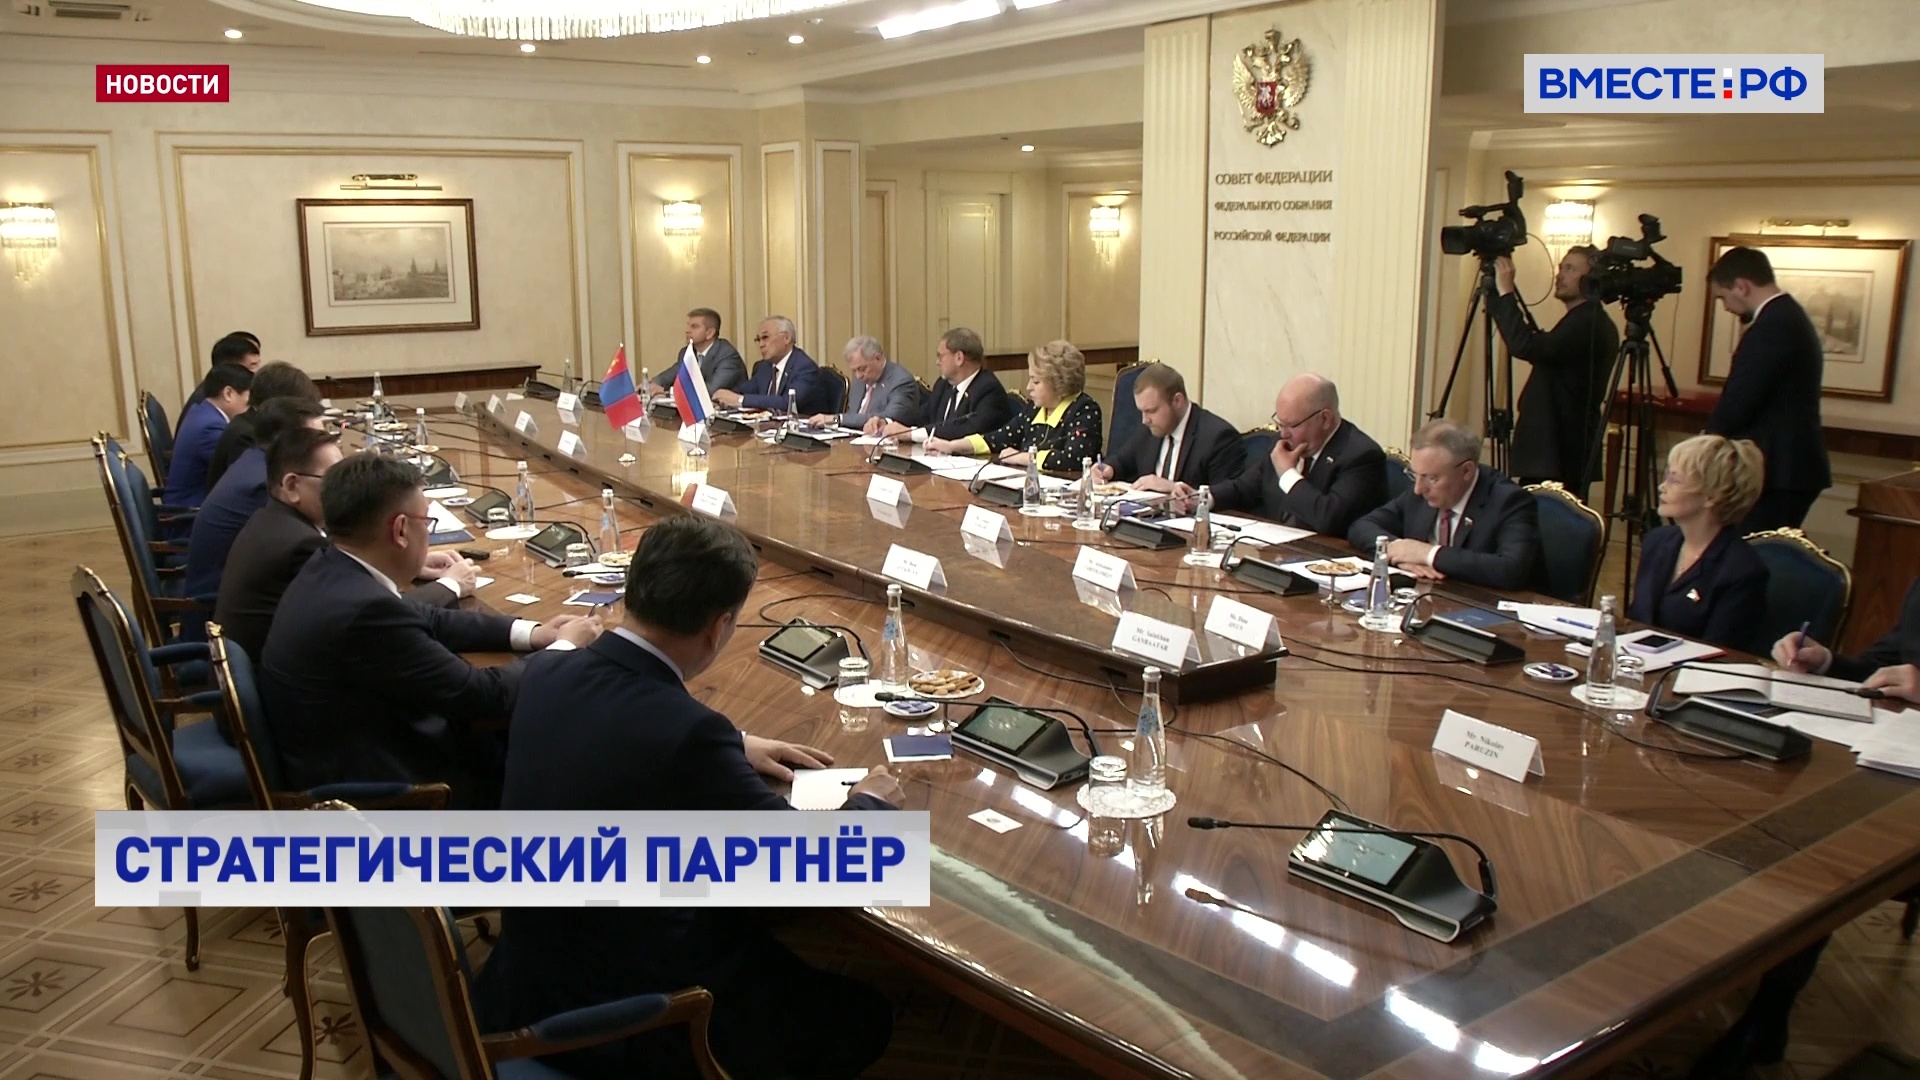 Монголия – стратегический партнер России в Азии, заявила Матвиенко